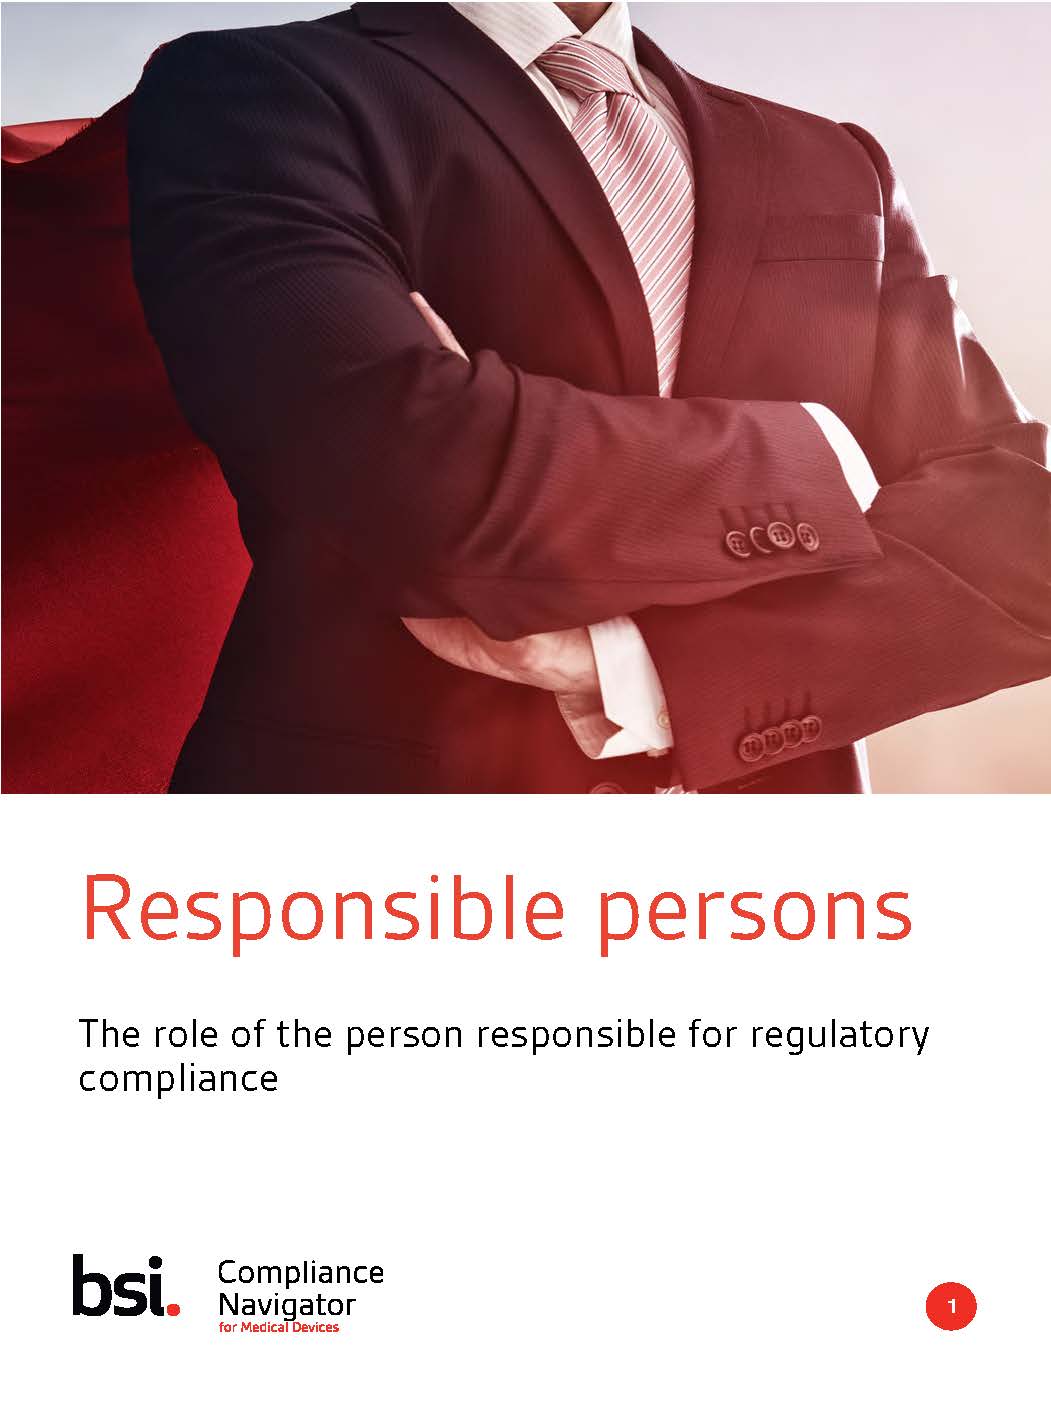 Personnes responsables : le rôle de la personne responsable de la conformité réglementaire